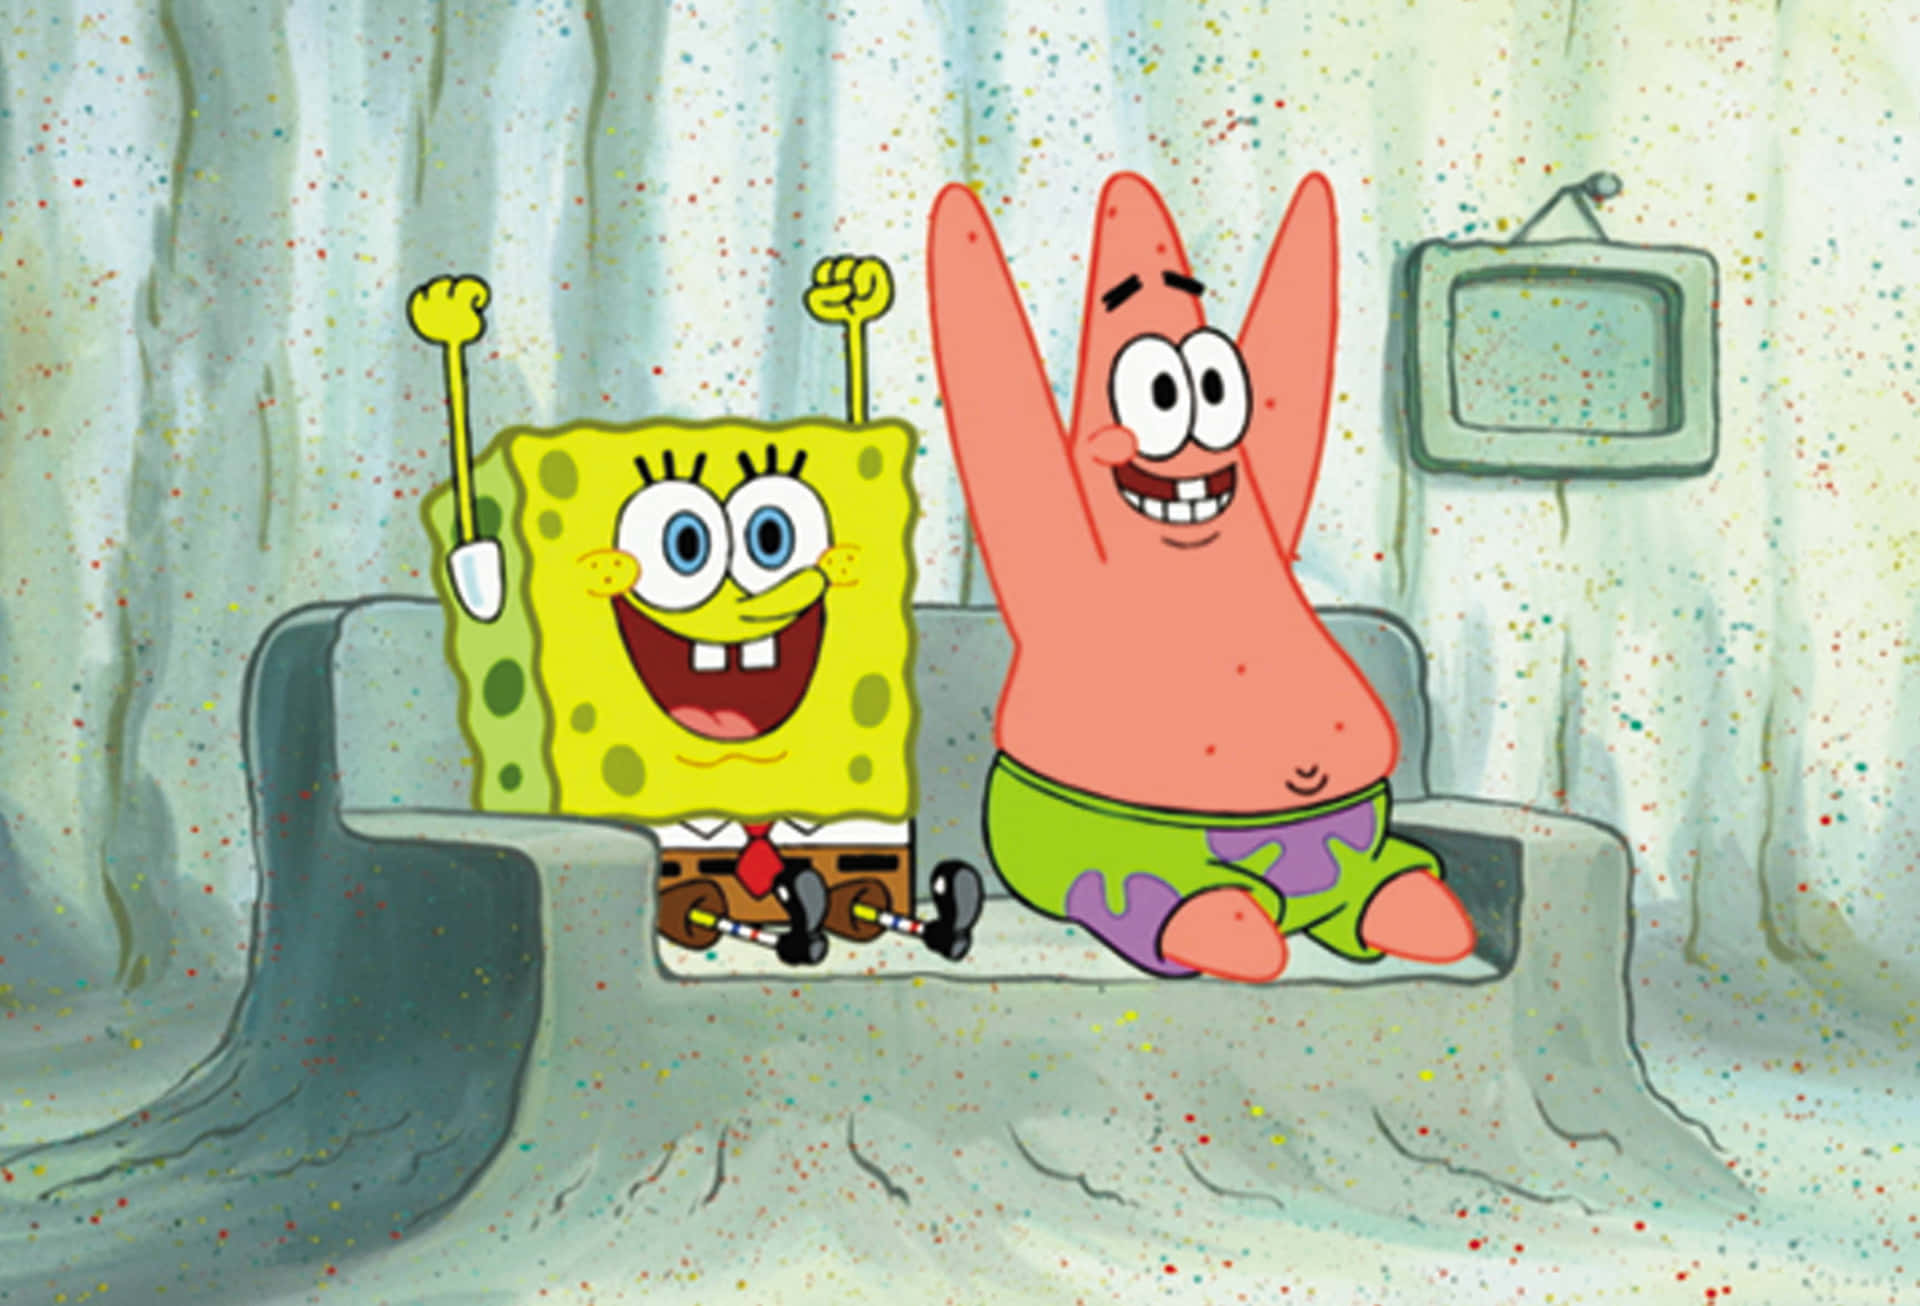 Patrick og SpongeBob fejrer æstetisk neon. Wallpaper